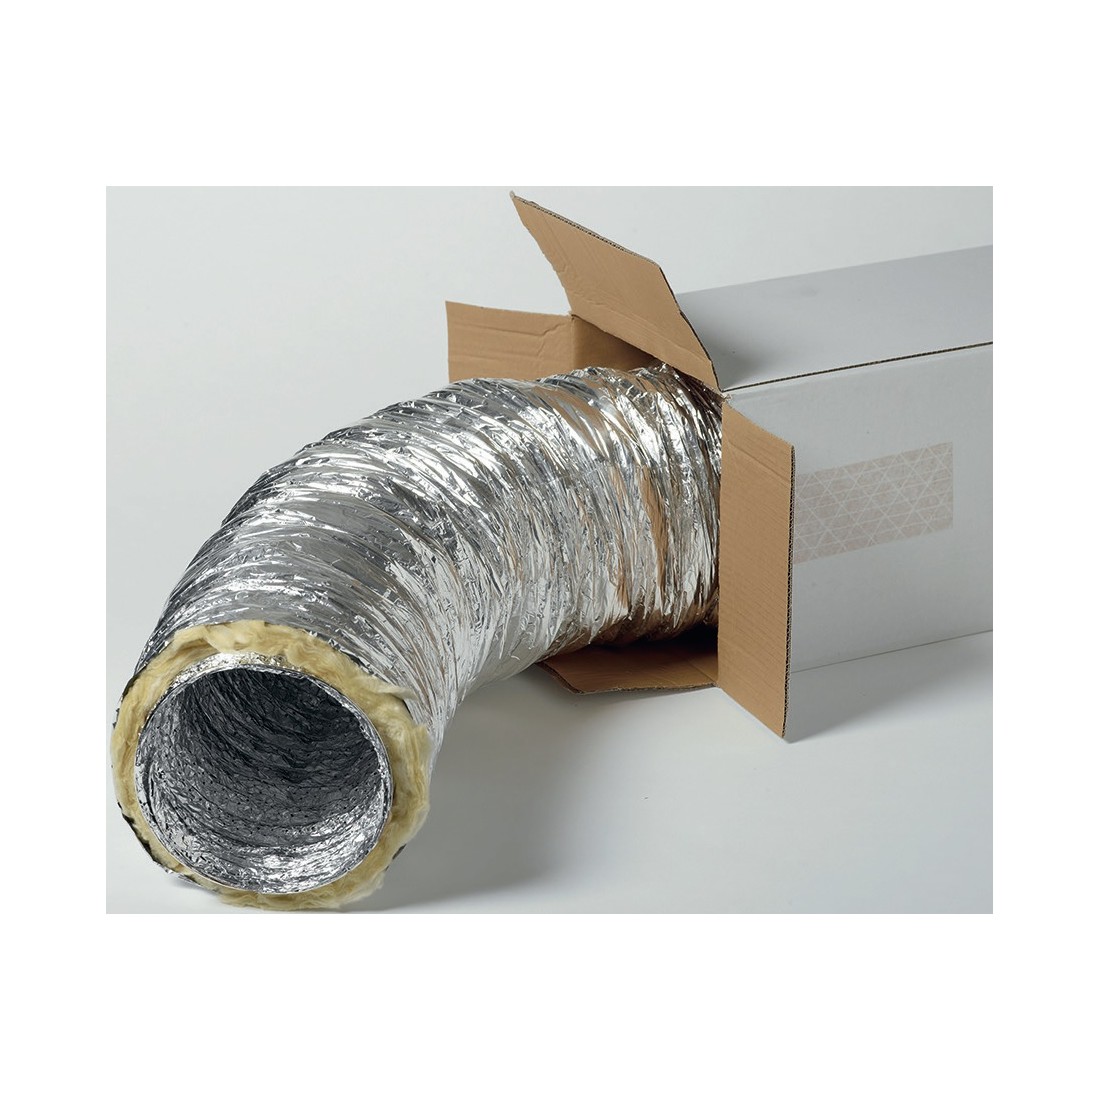 Protection 4 Couches AC Infinity Conduit Flexible en Aluminium 15,2 cm 2,4 m de Long pour Chauffage Refroidissement et échappement